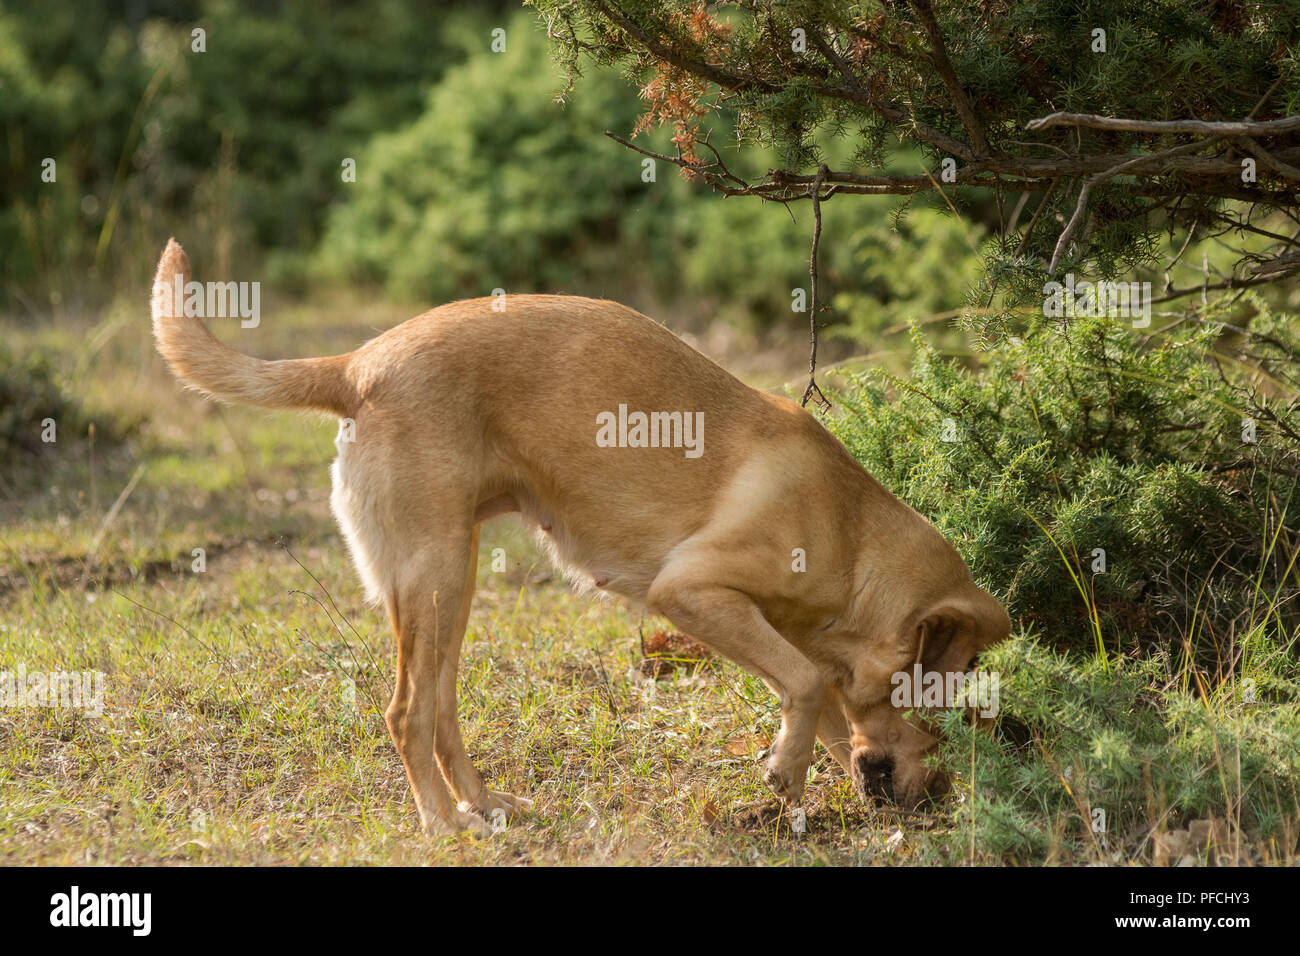 (180821) -- TRIKALA, 21 août 2018 (Xinhua) -- un chien de chasse à la truffe creuse le sol pour les truffes pendant une truffe-chasse guidée en Thessalie, Grèce, 20 août 2018. (Xinhua/Apostolos Domalis) (djj) Banque D'Images